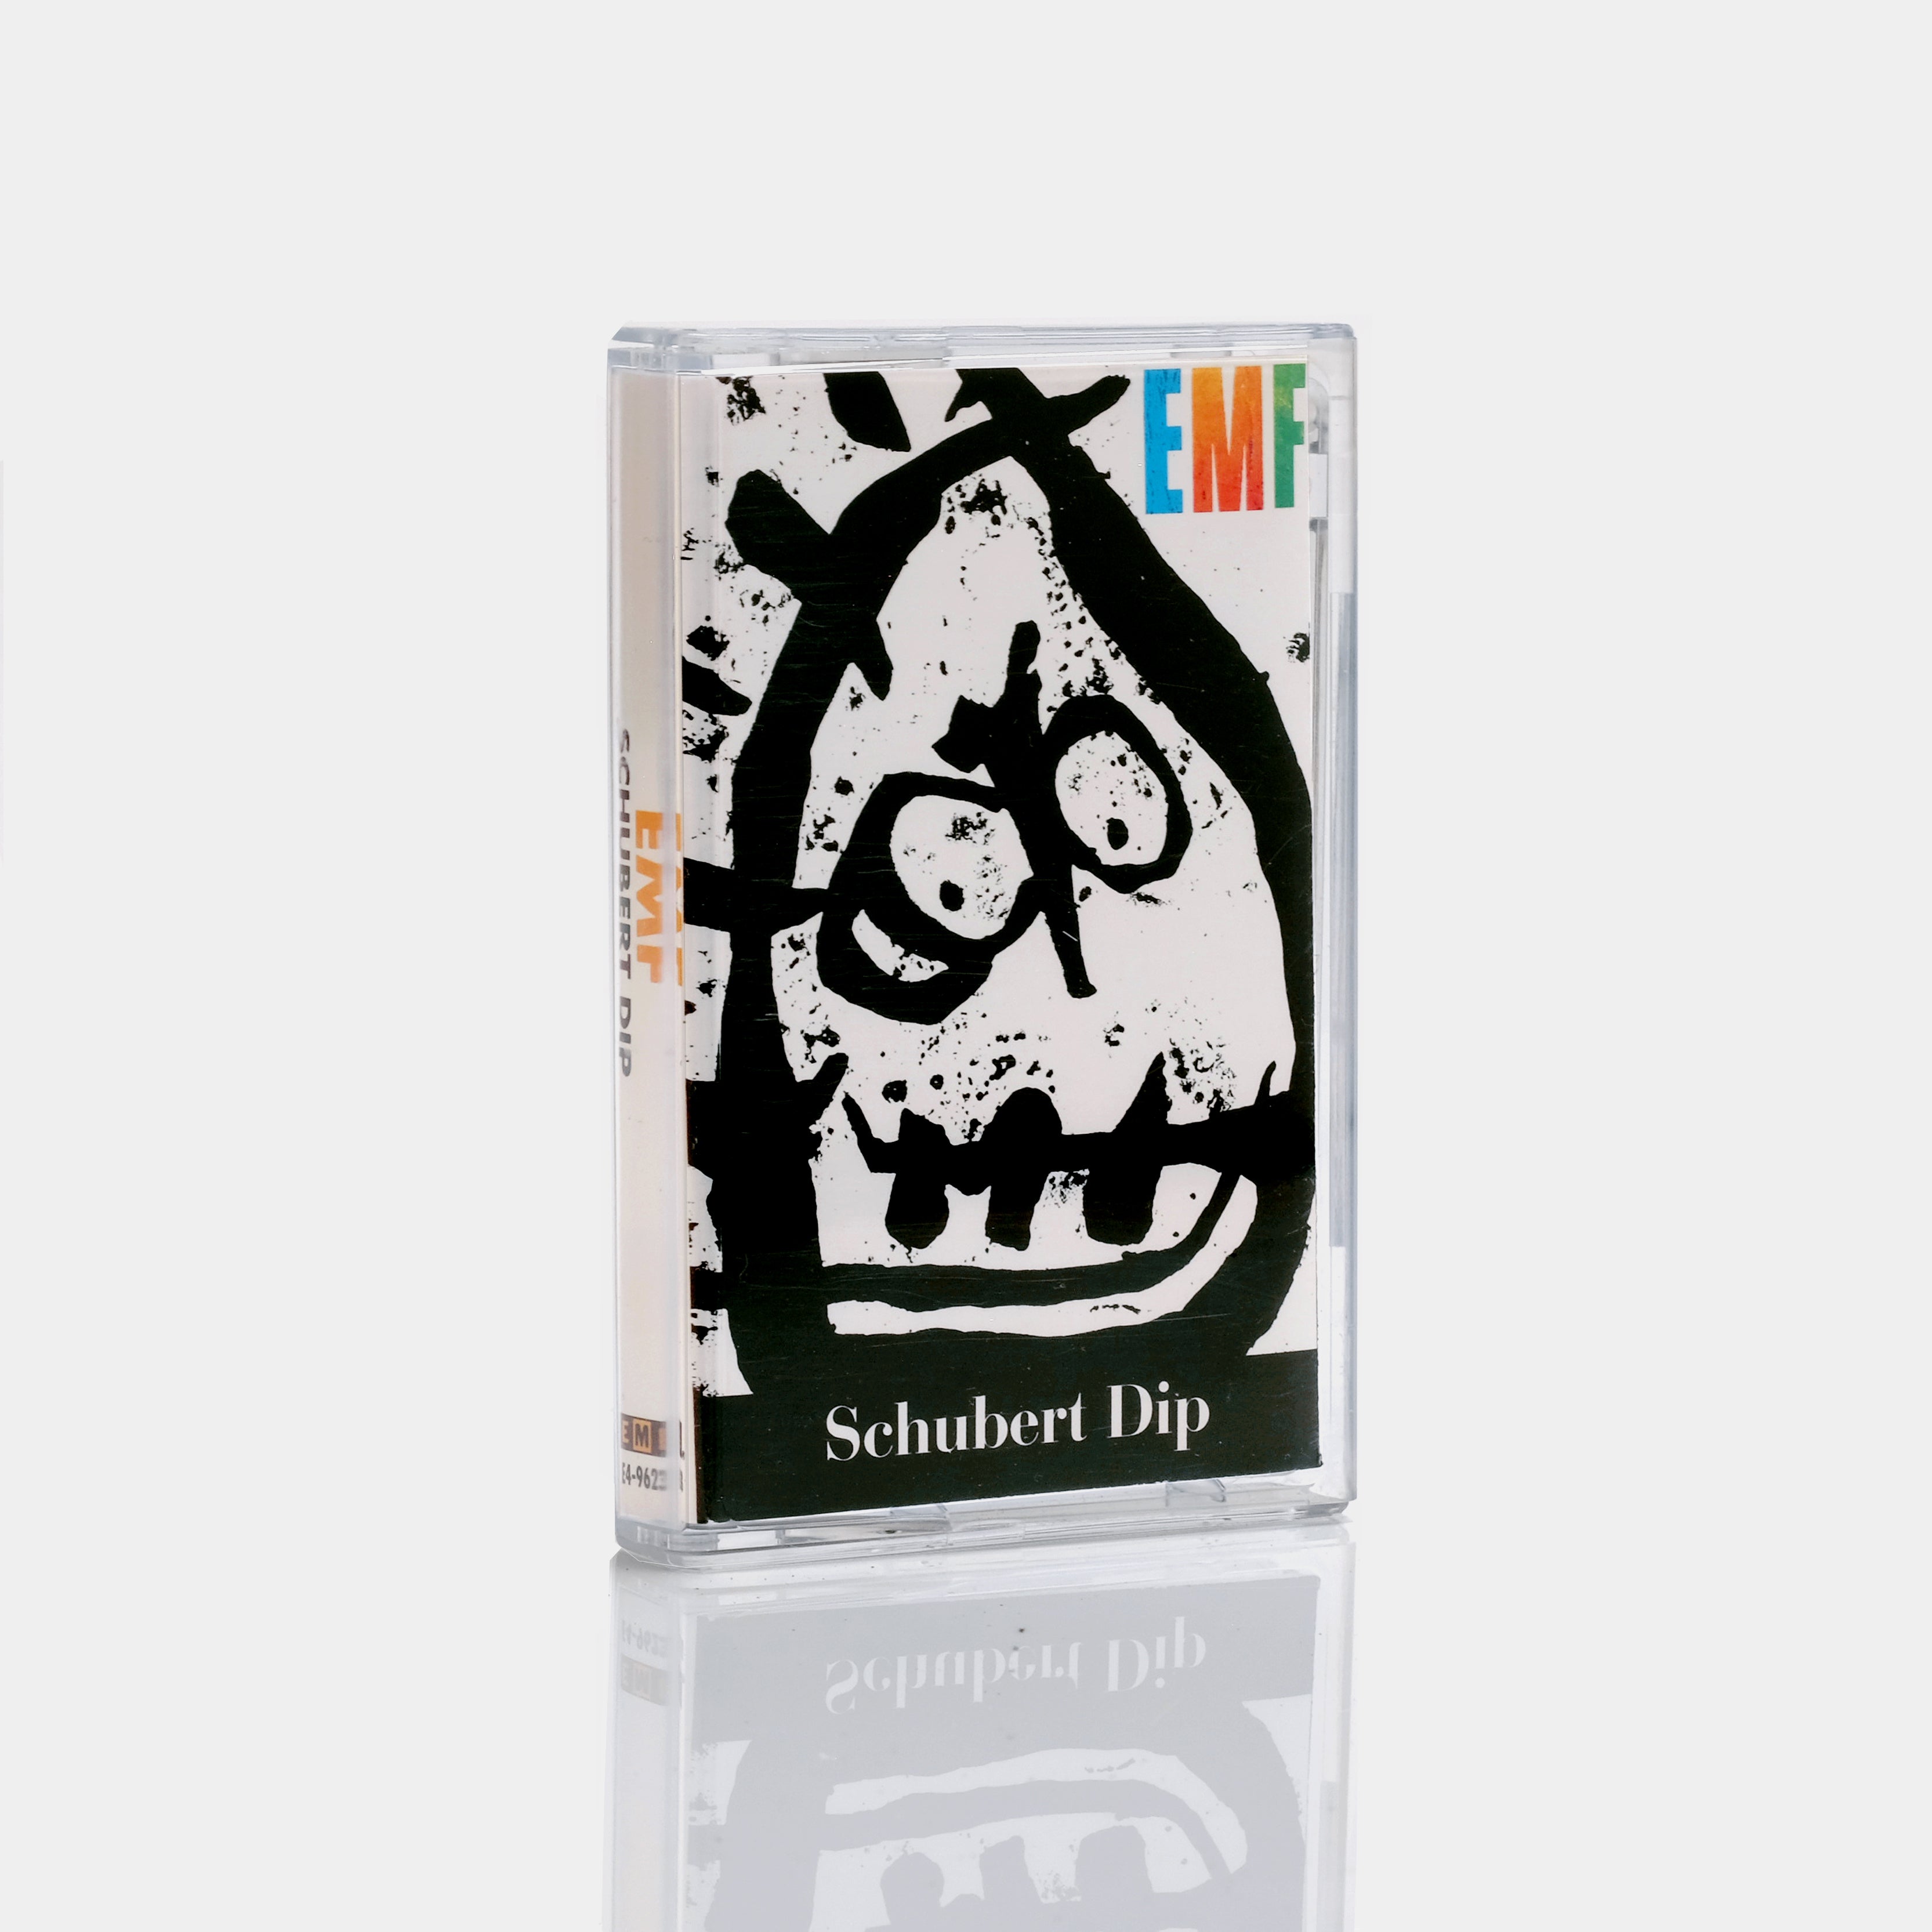 EMF - Schubert Dip Cassette Tape